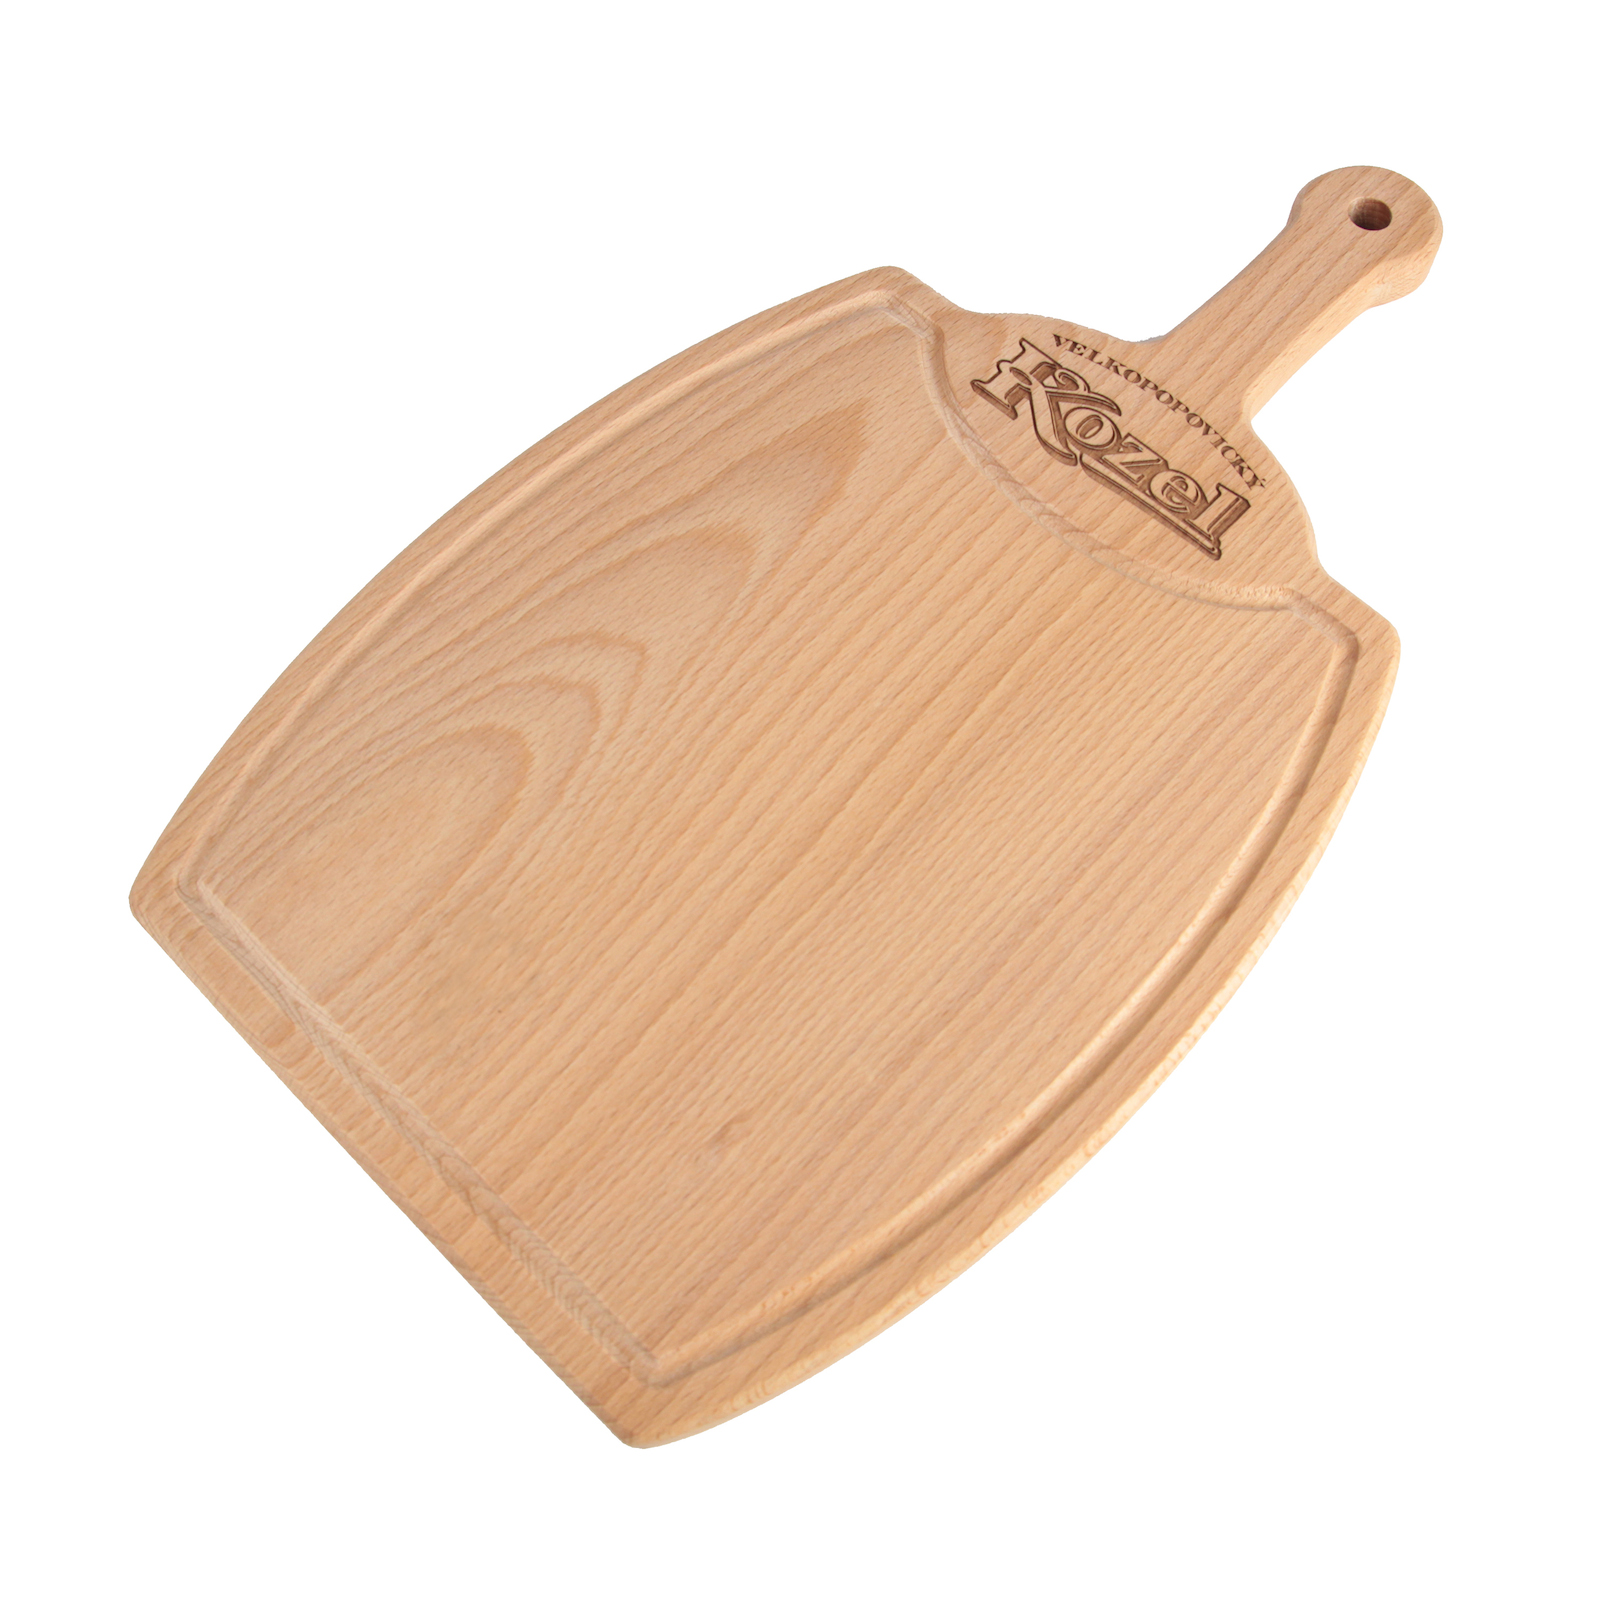 Kozel wooden board - keg